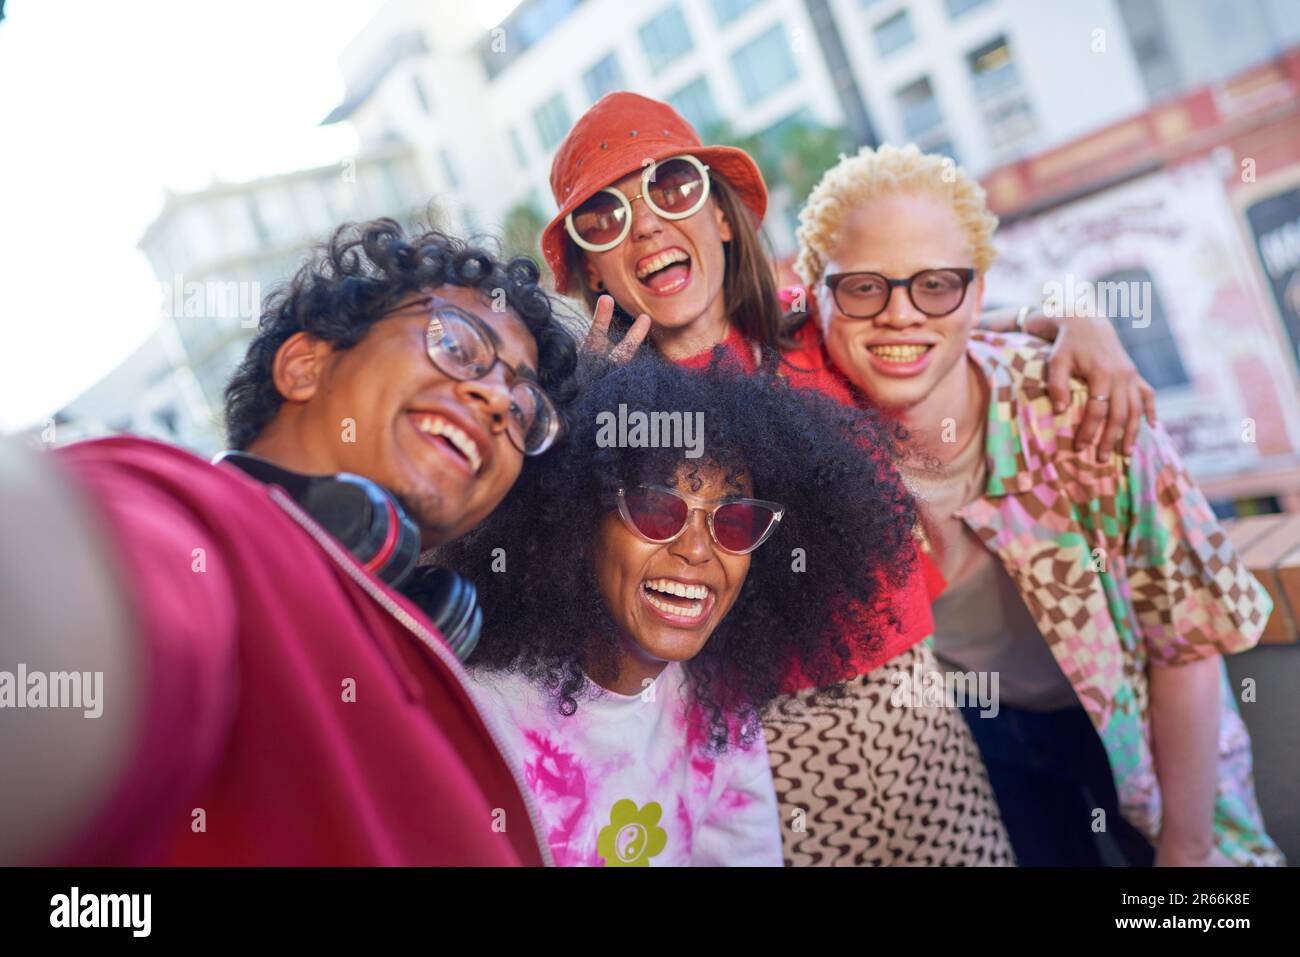 Selfie POV portrait happy young friends on urban balcony Stock Photo